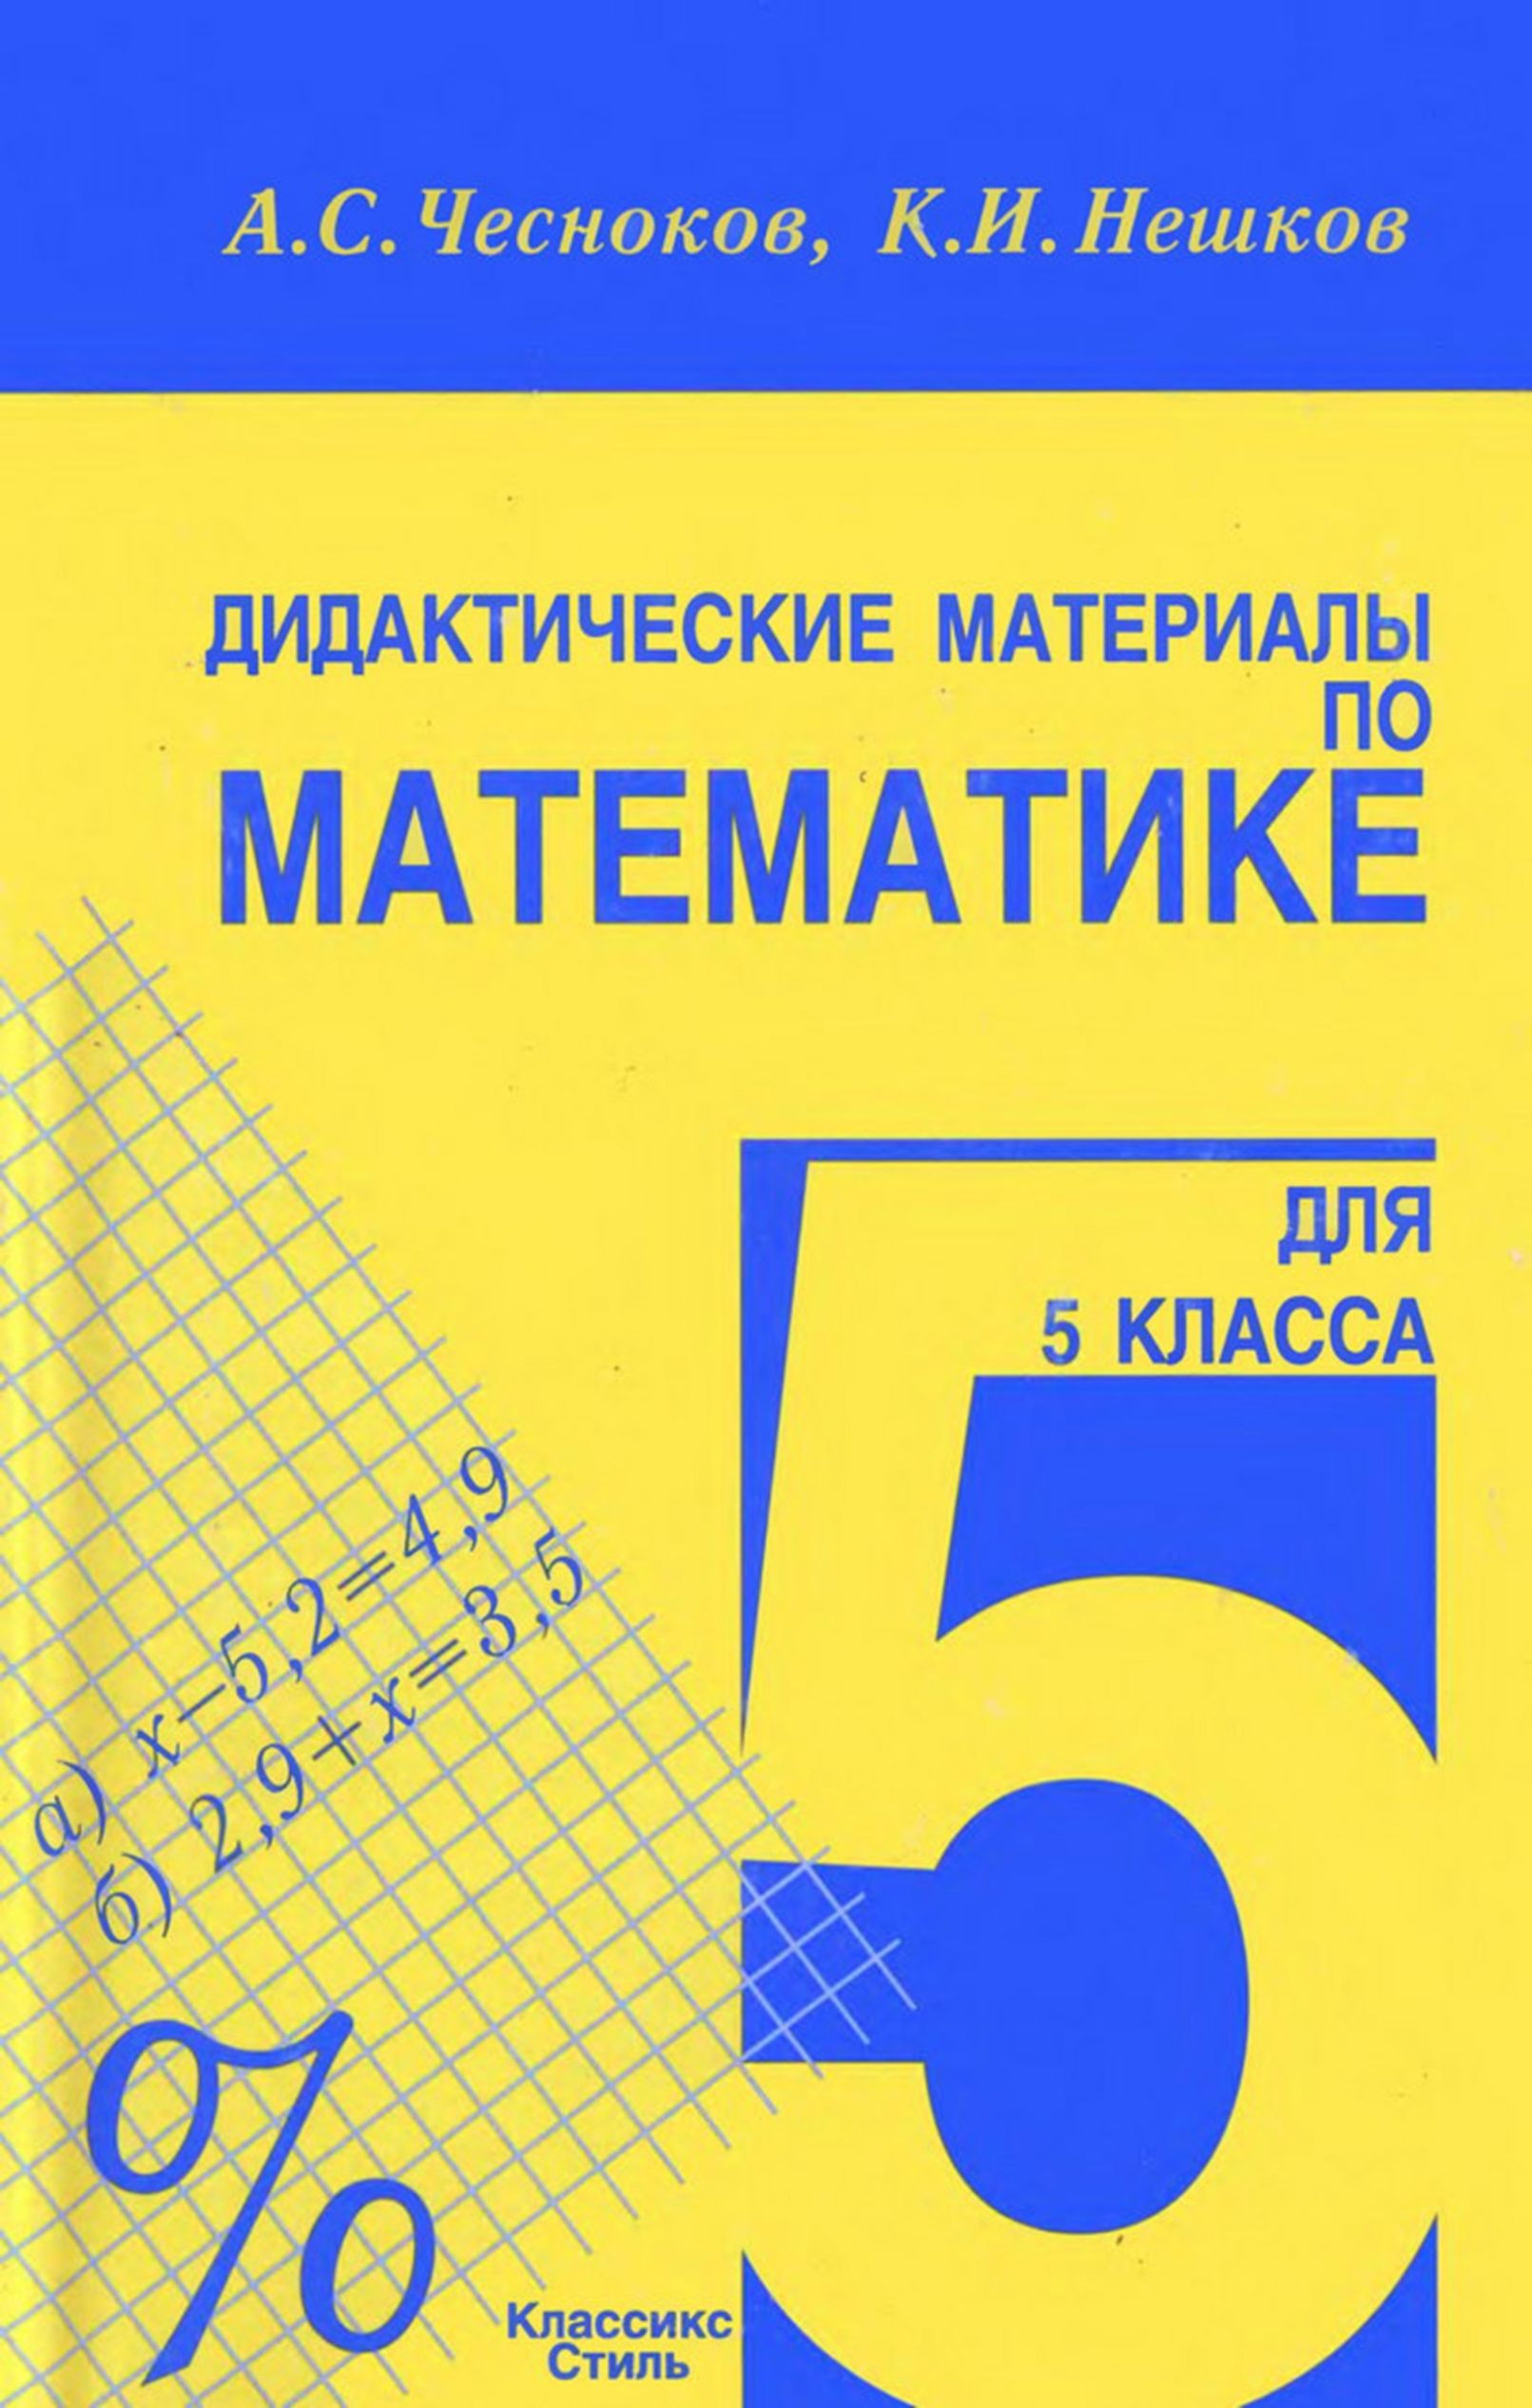 Дидактические материалы по математике (1990)